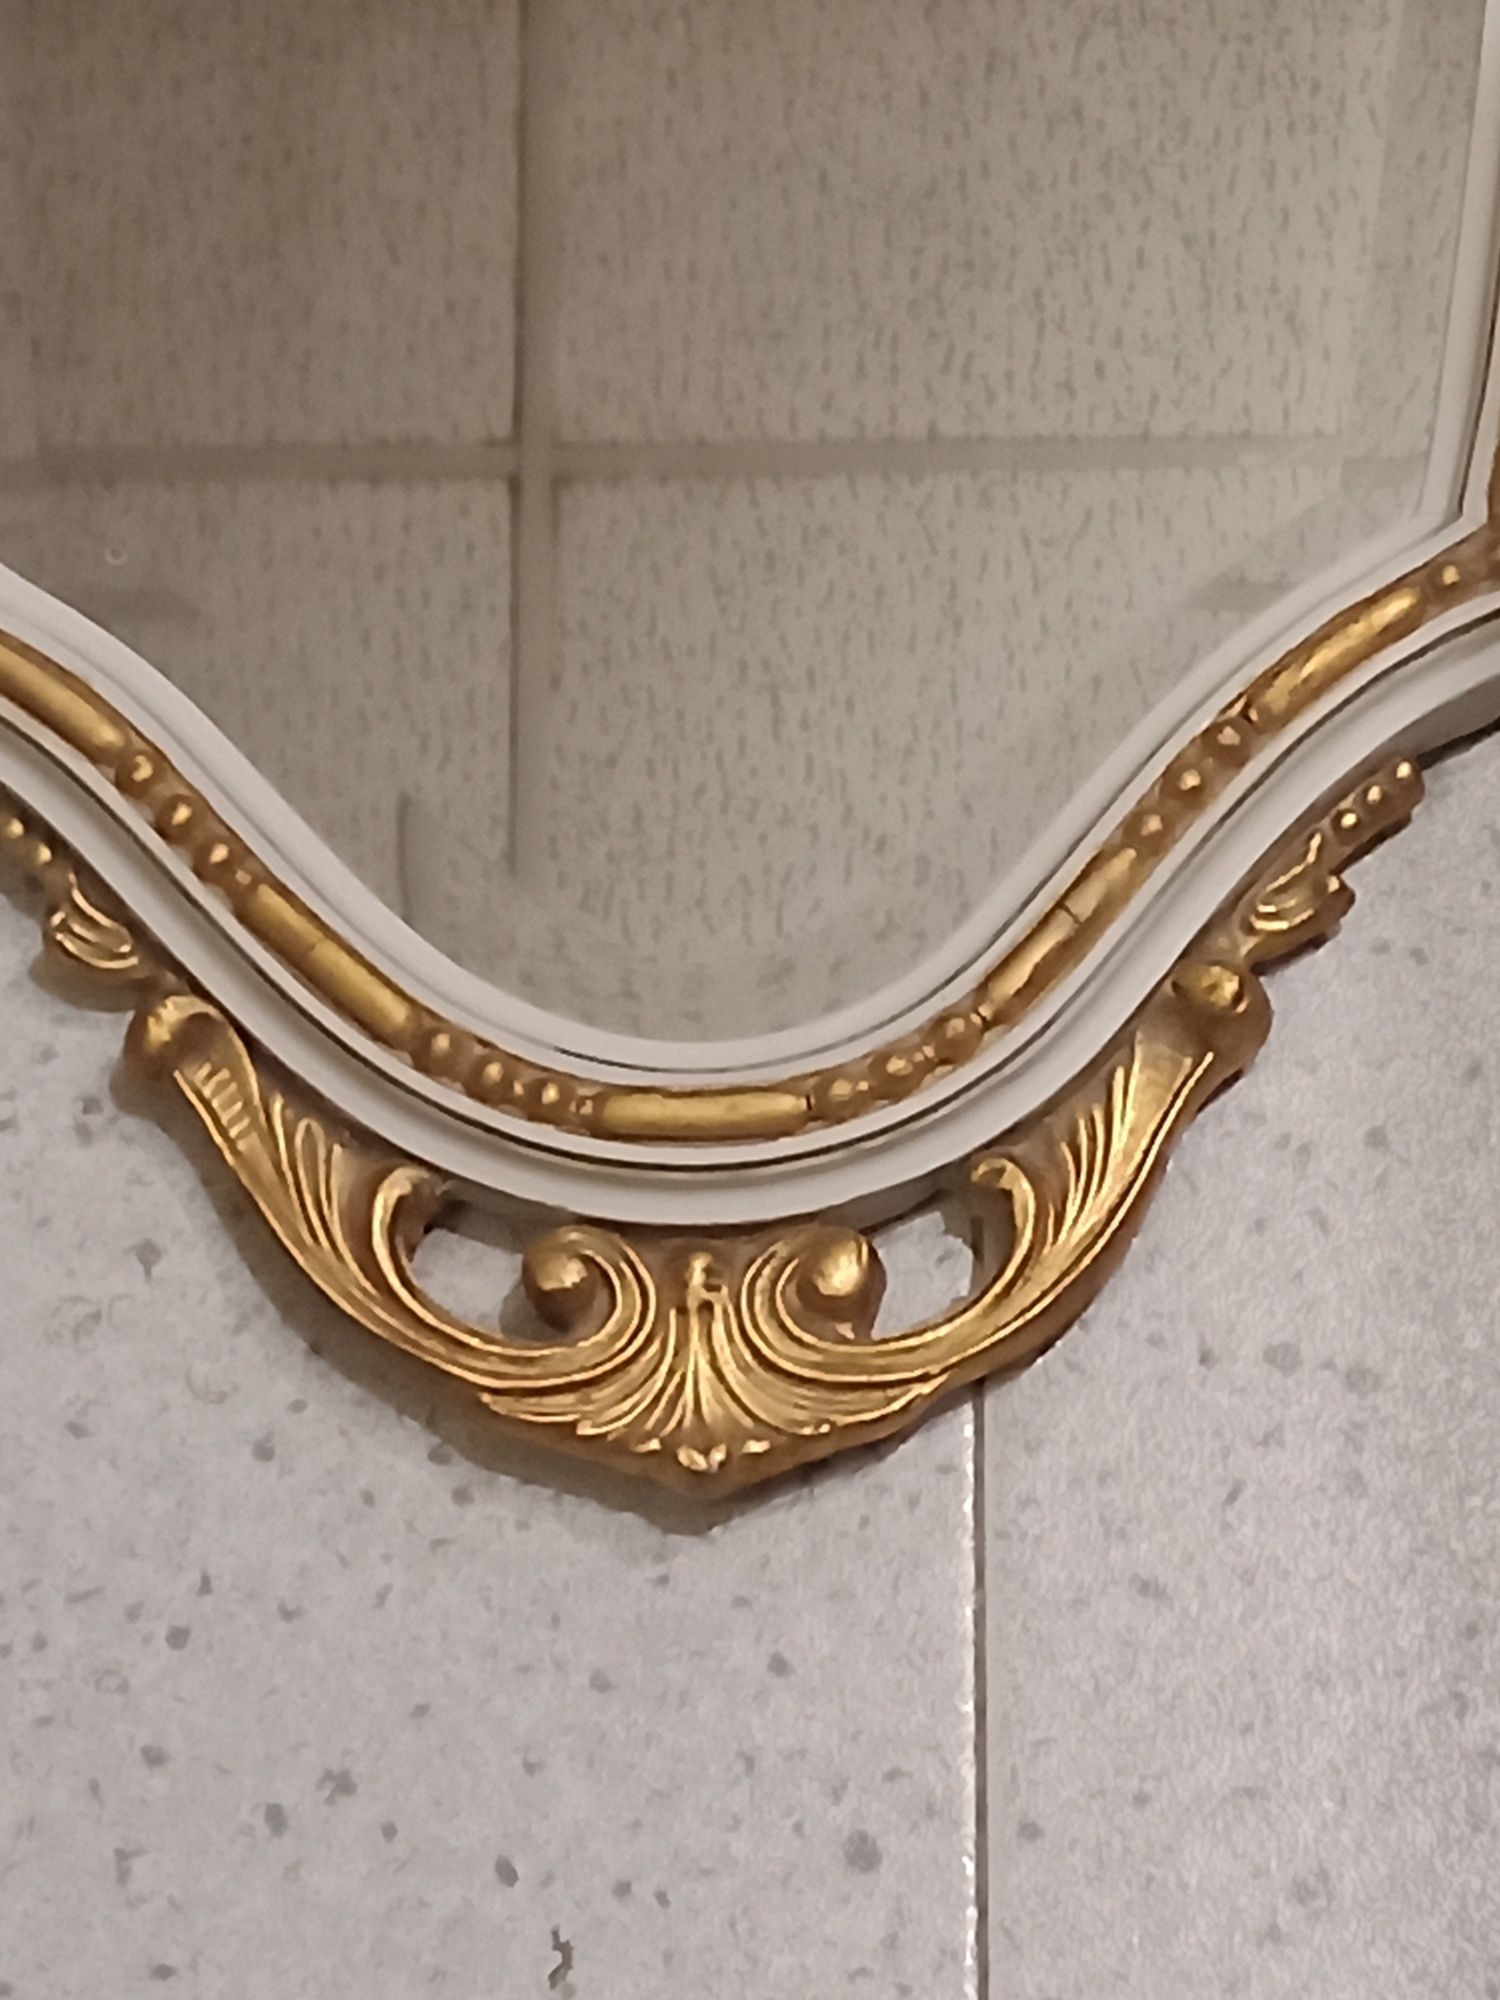 Espelho antigo com vidro biselado , acabamentos dourados